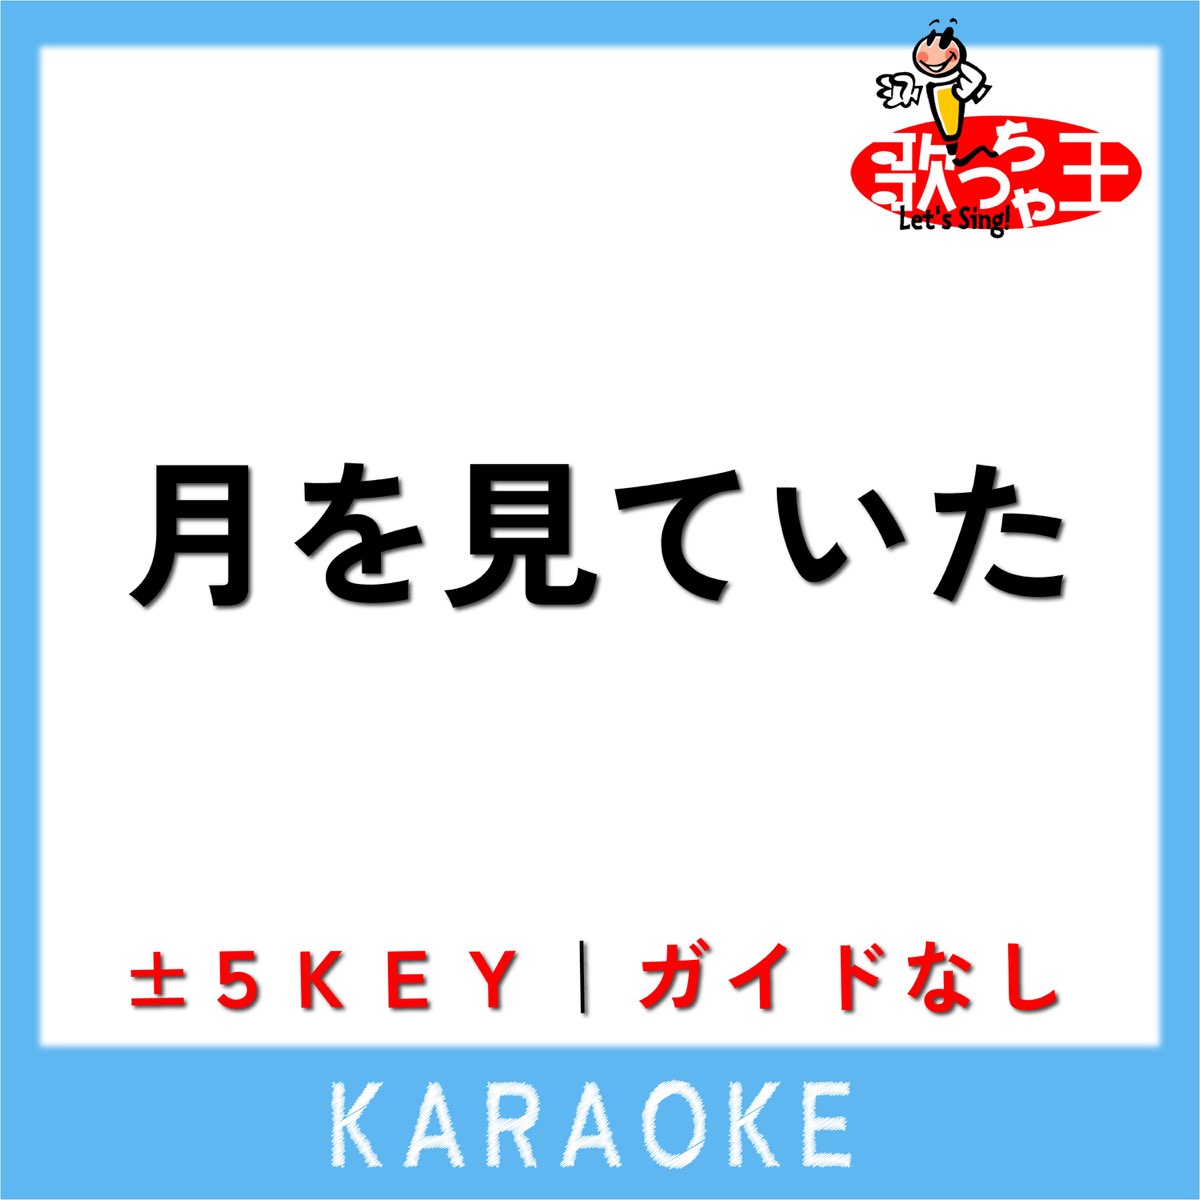 tsuki-wo-miteita-no-guide-melody-original-by-yonezu-kenshi-by-uta-cha